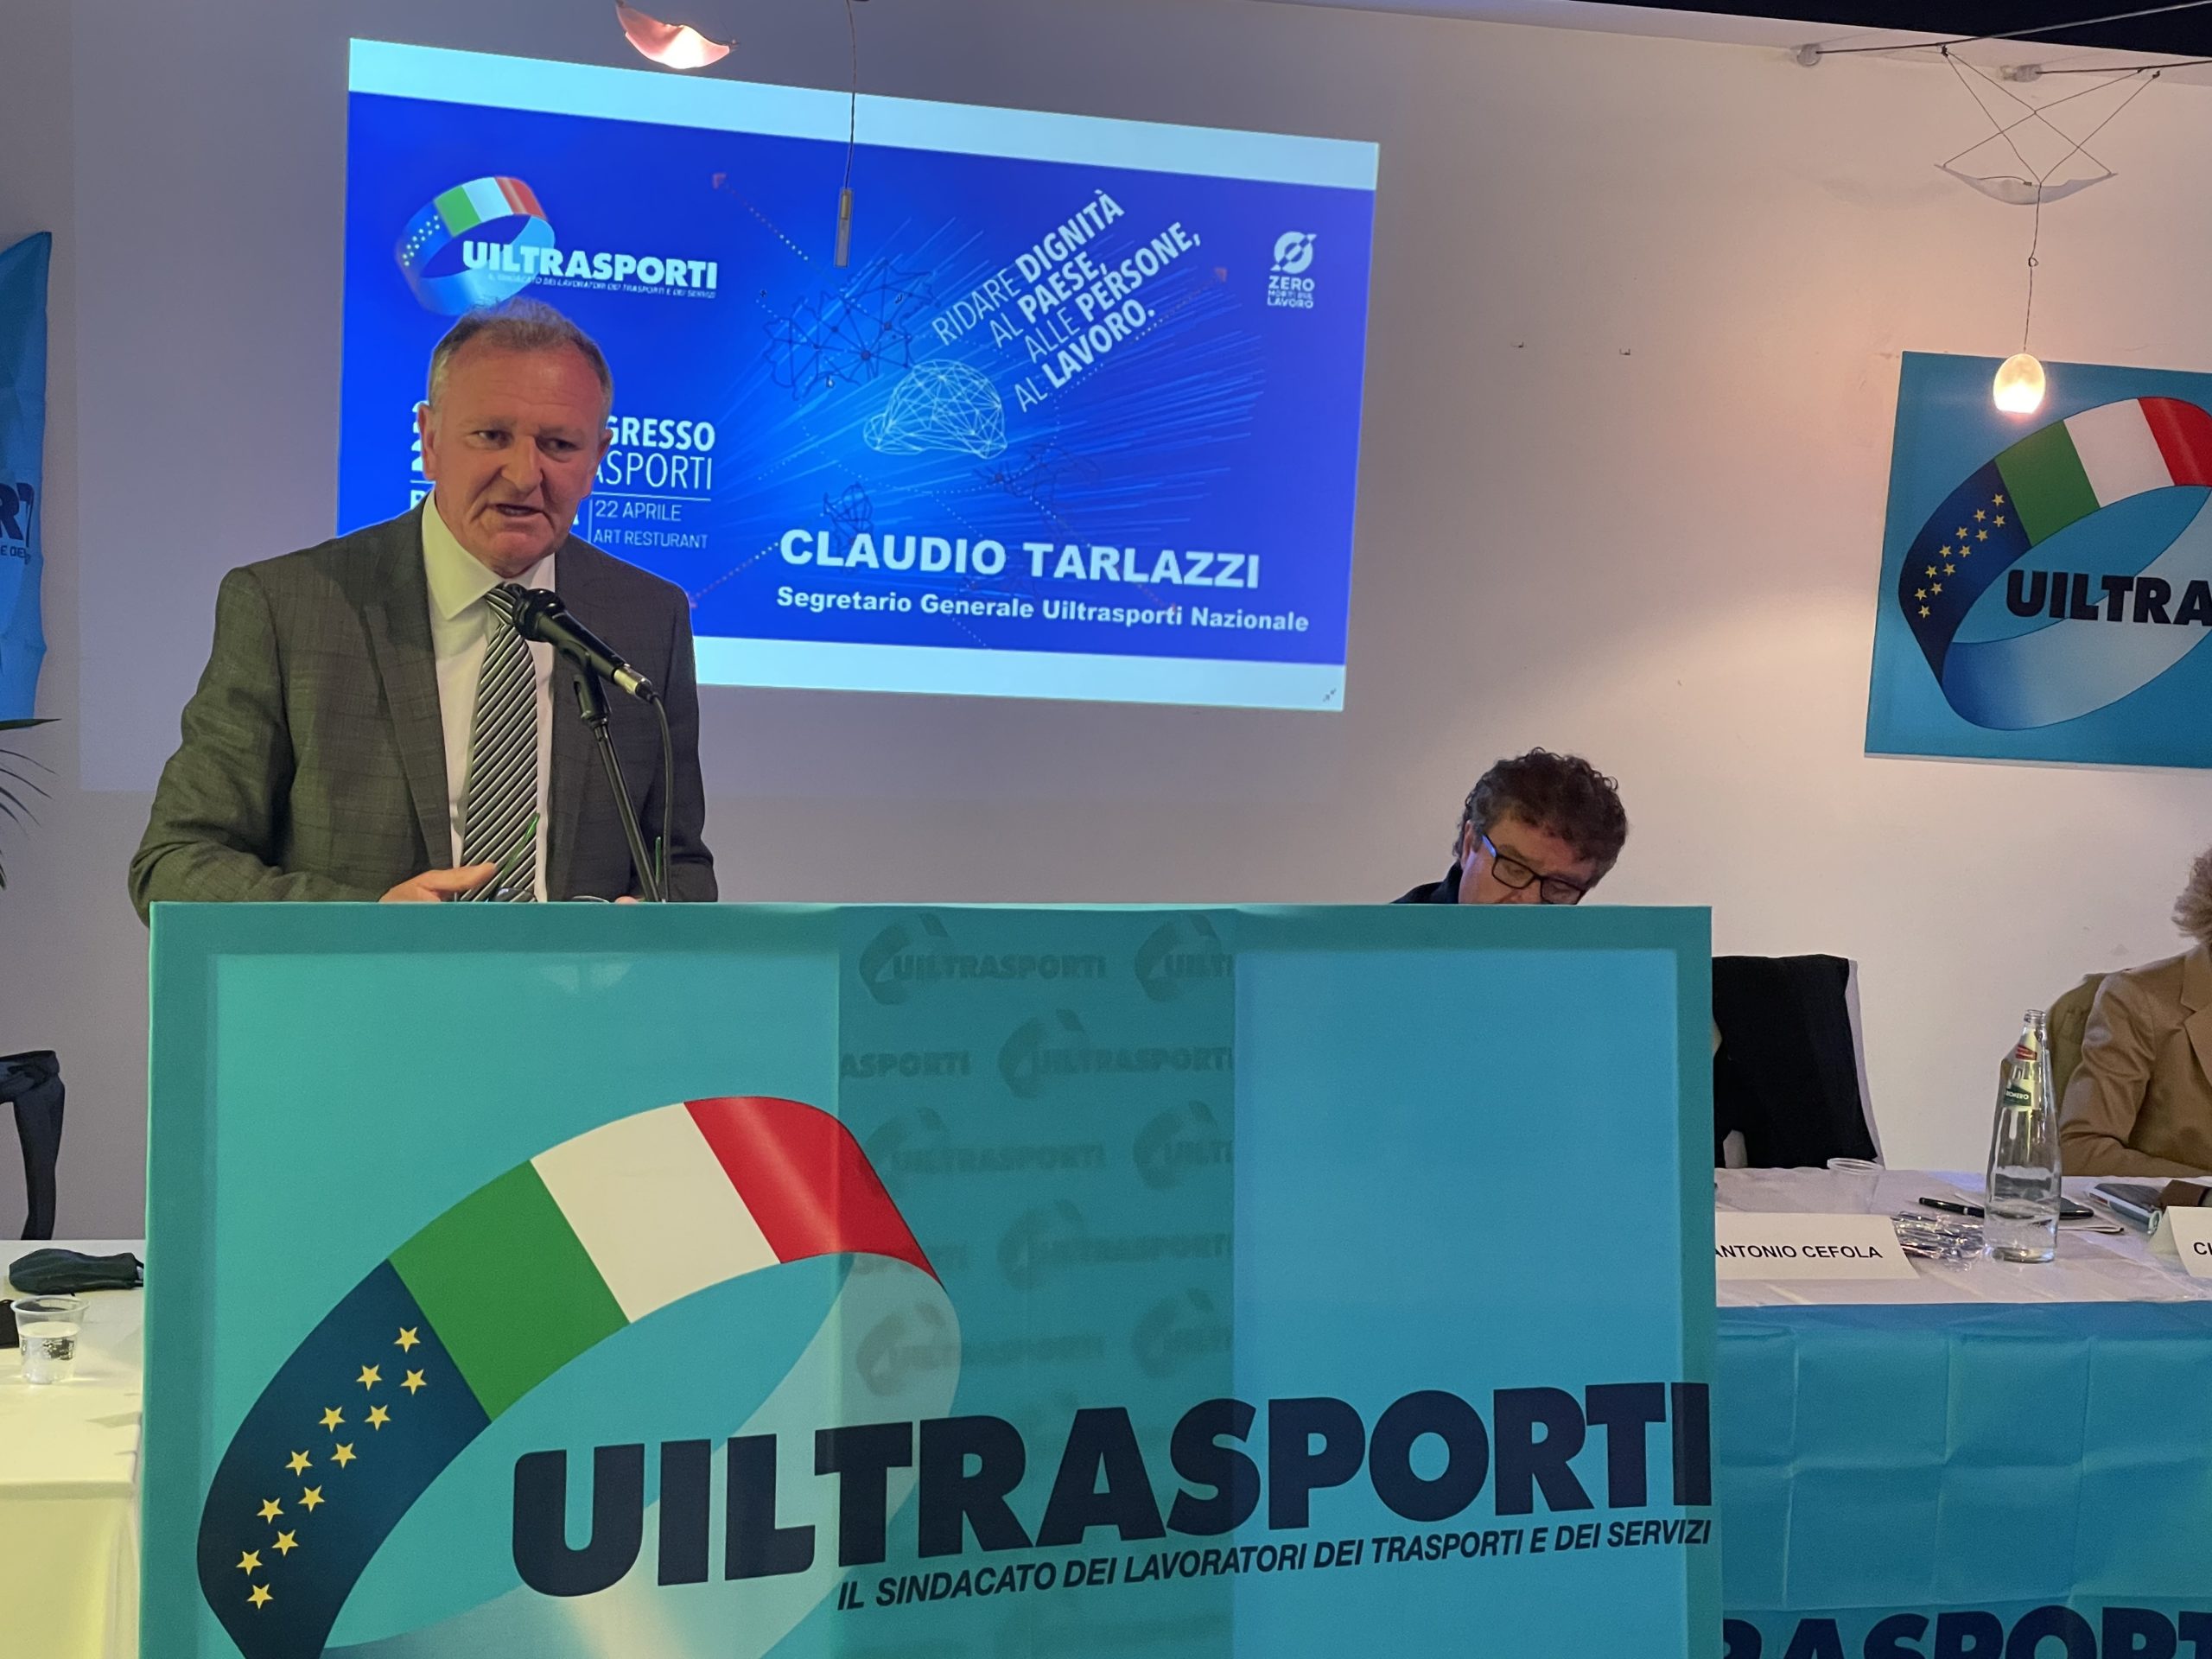 Congresso Uiltrasporti Basilicata: Tarlazzi: contribuiamo a costruire un nuovo modello di sviluppo per ridare dignità al Paese, alle persone, al lavoro